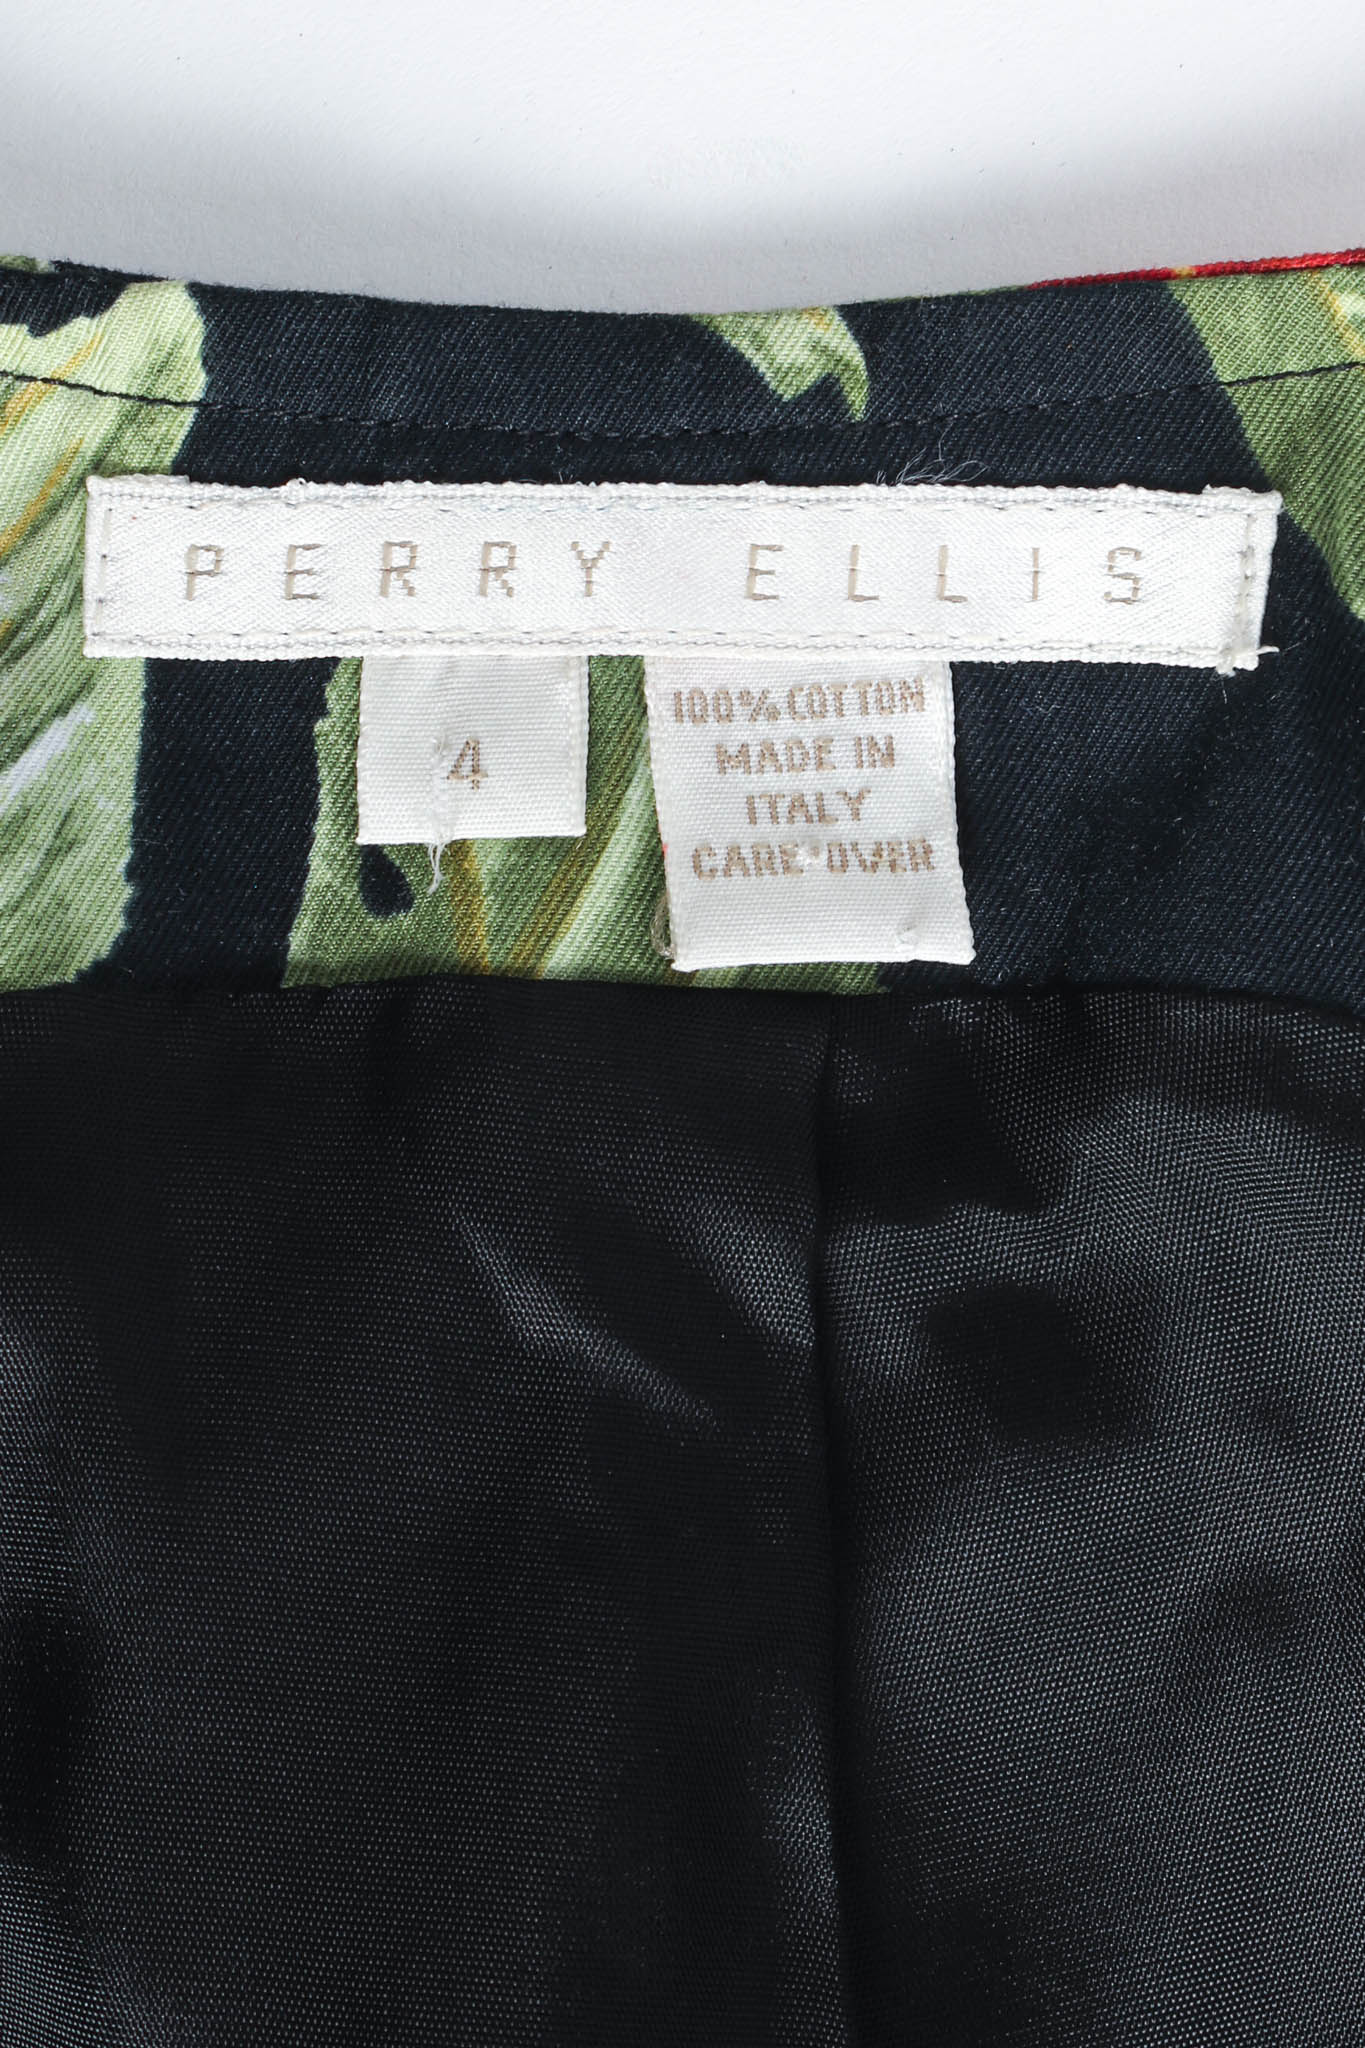 Vintage Marc Jacobs for Perry Ellis 1993 S/S Grunge Cherry Vest size/tag @ Recess LA